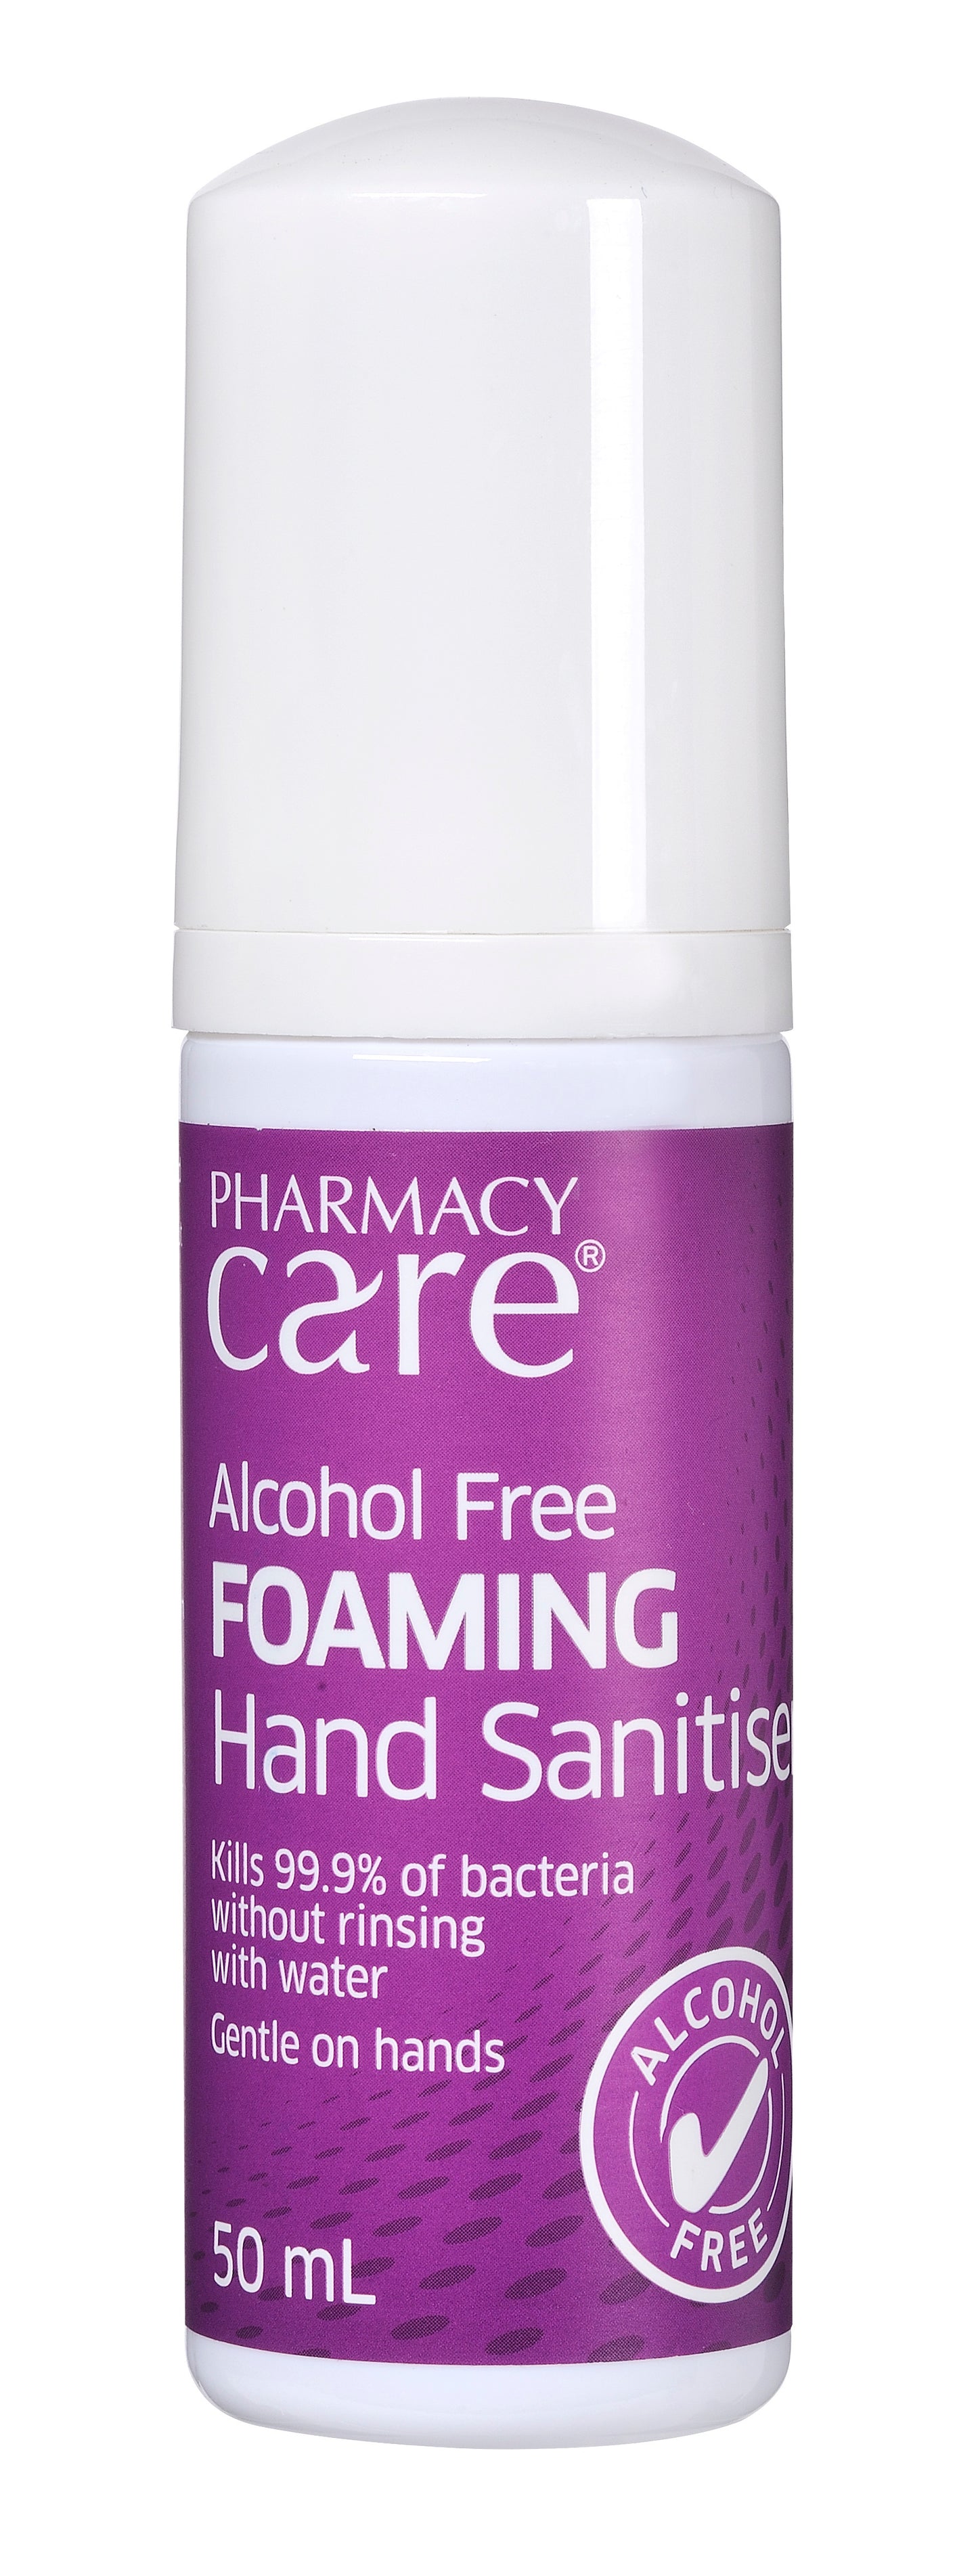 Pharmacy Care Alcohol Free Foaming Hand Sanitiser - 50 mL